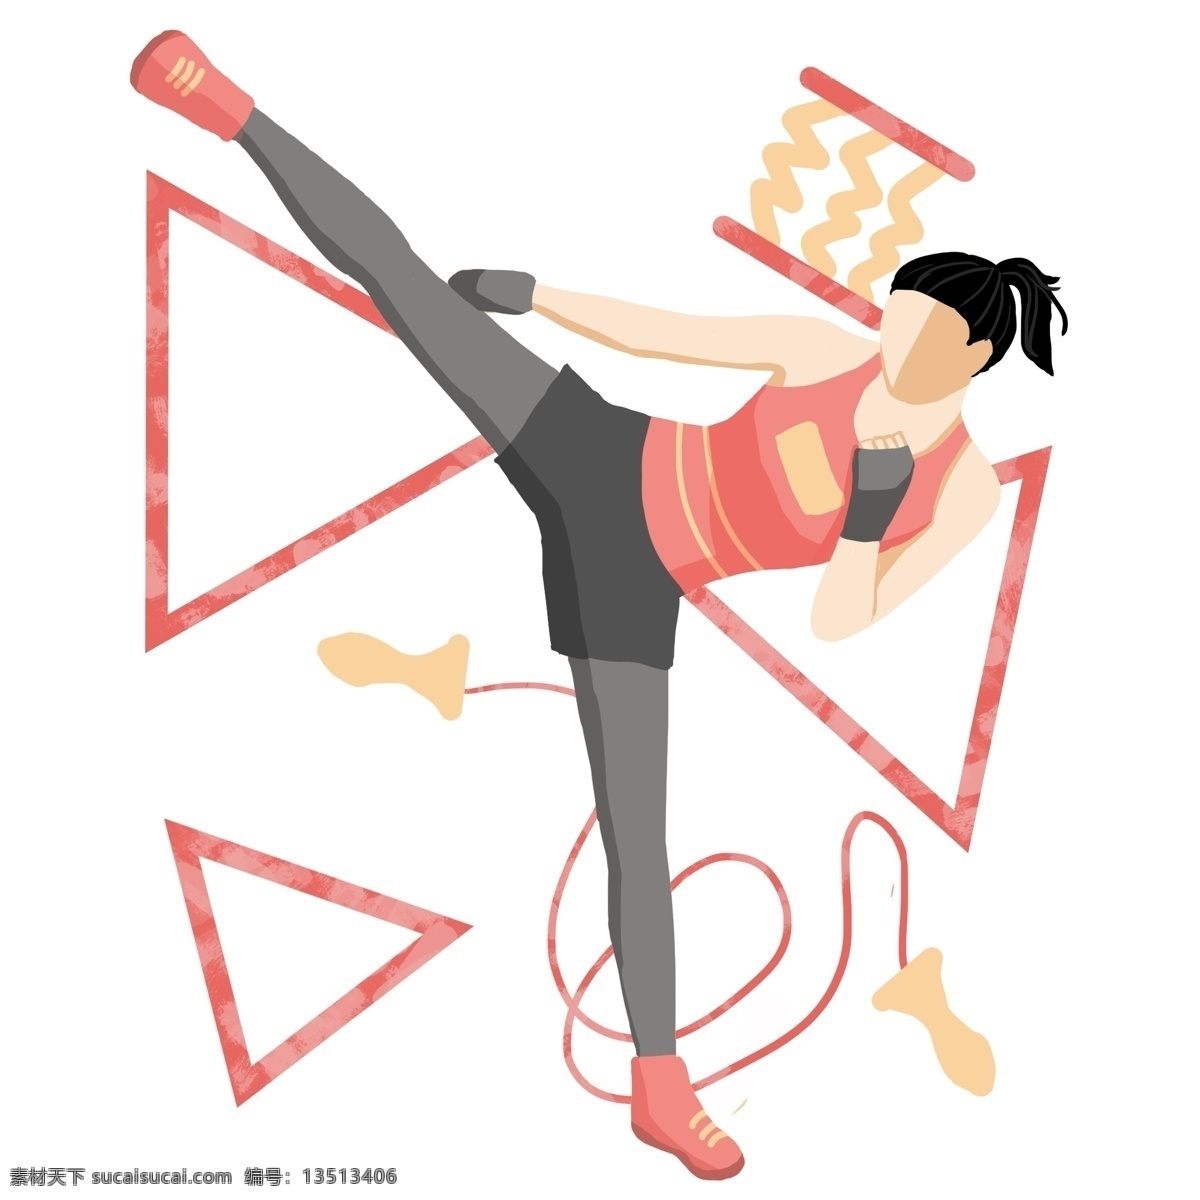 漂亮 女孩 运动 插画 漂亮的女孩 卡通插画 运动插画 健身运动 锻炼身体 活动筋骨 锻炼的女孩